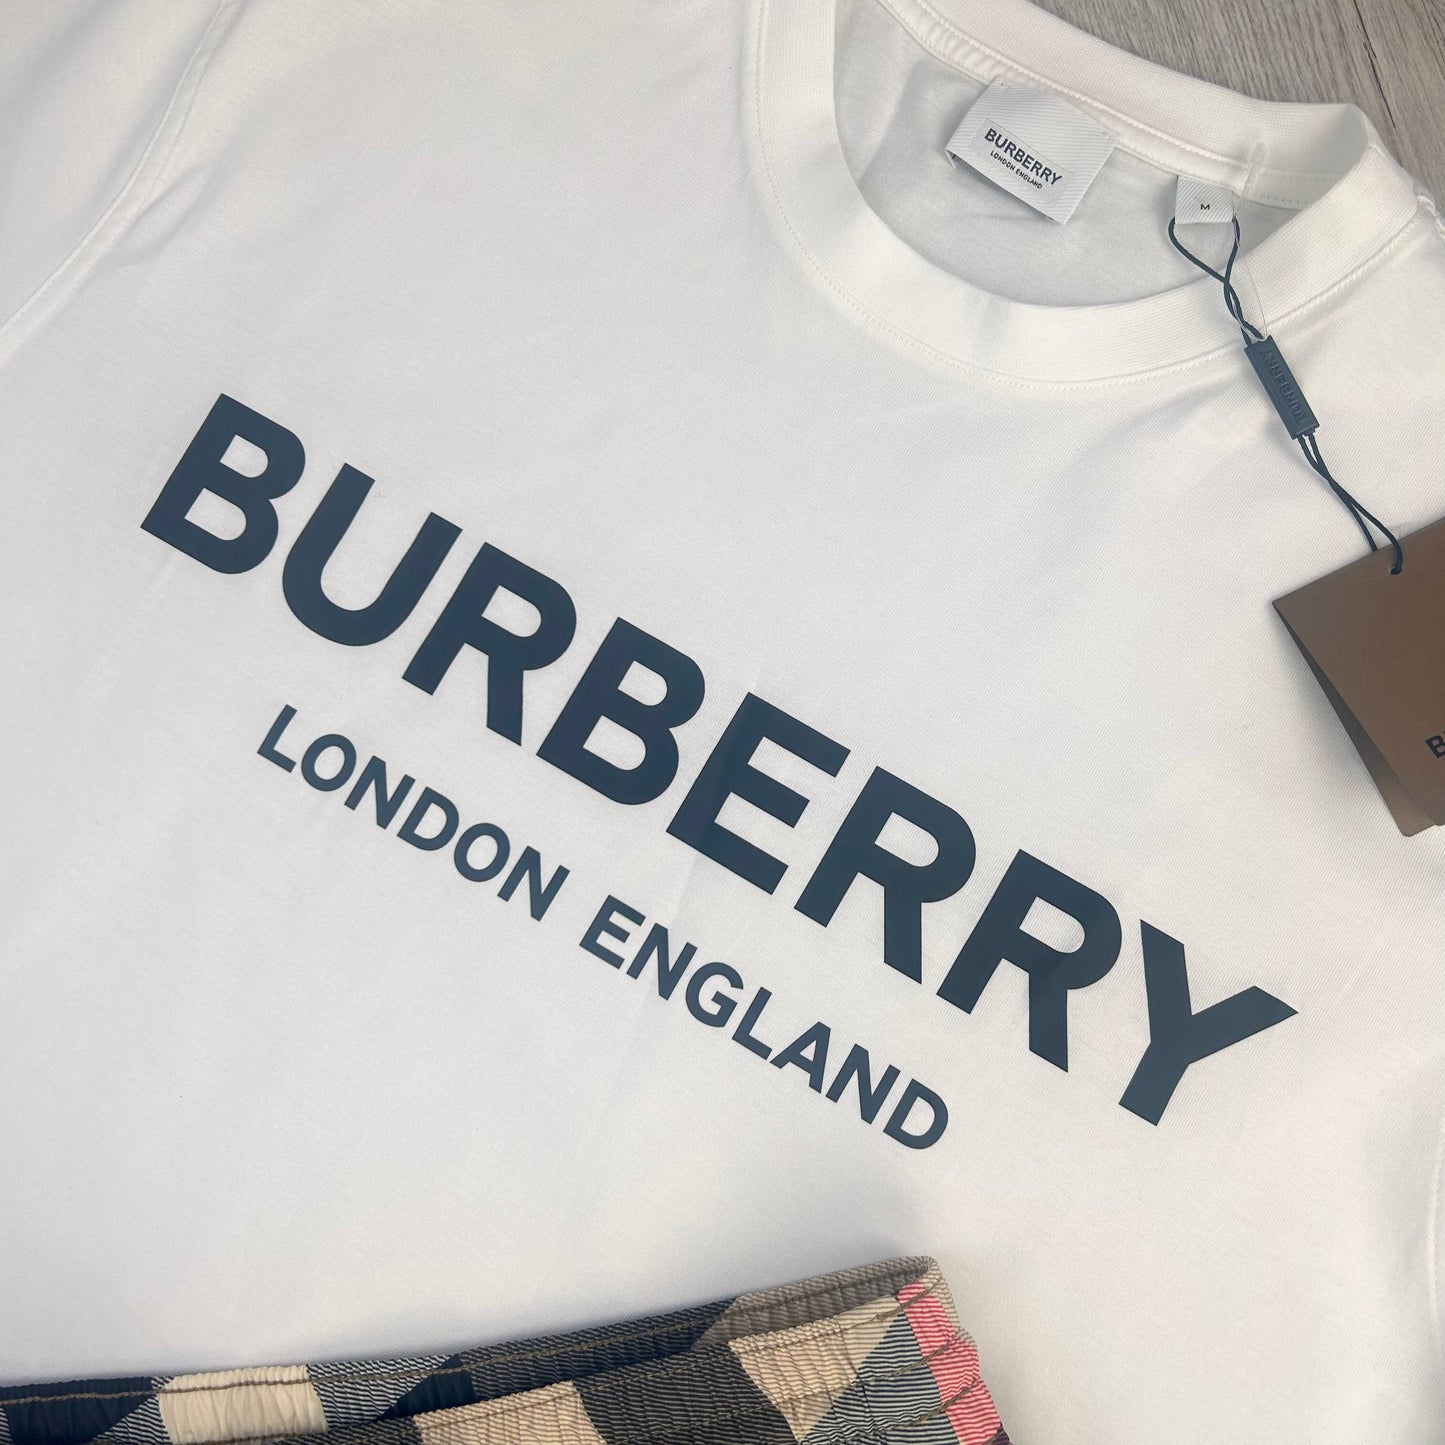 Burberry Men’s T-shirt & Swim Shorts Set